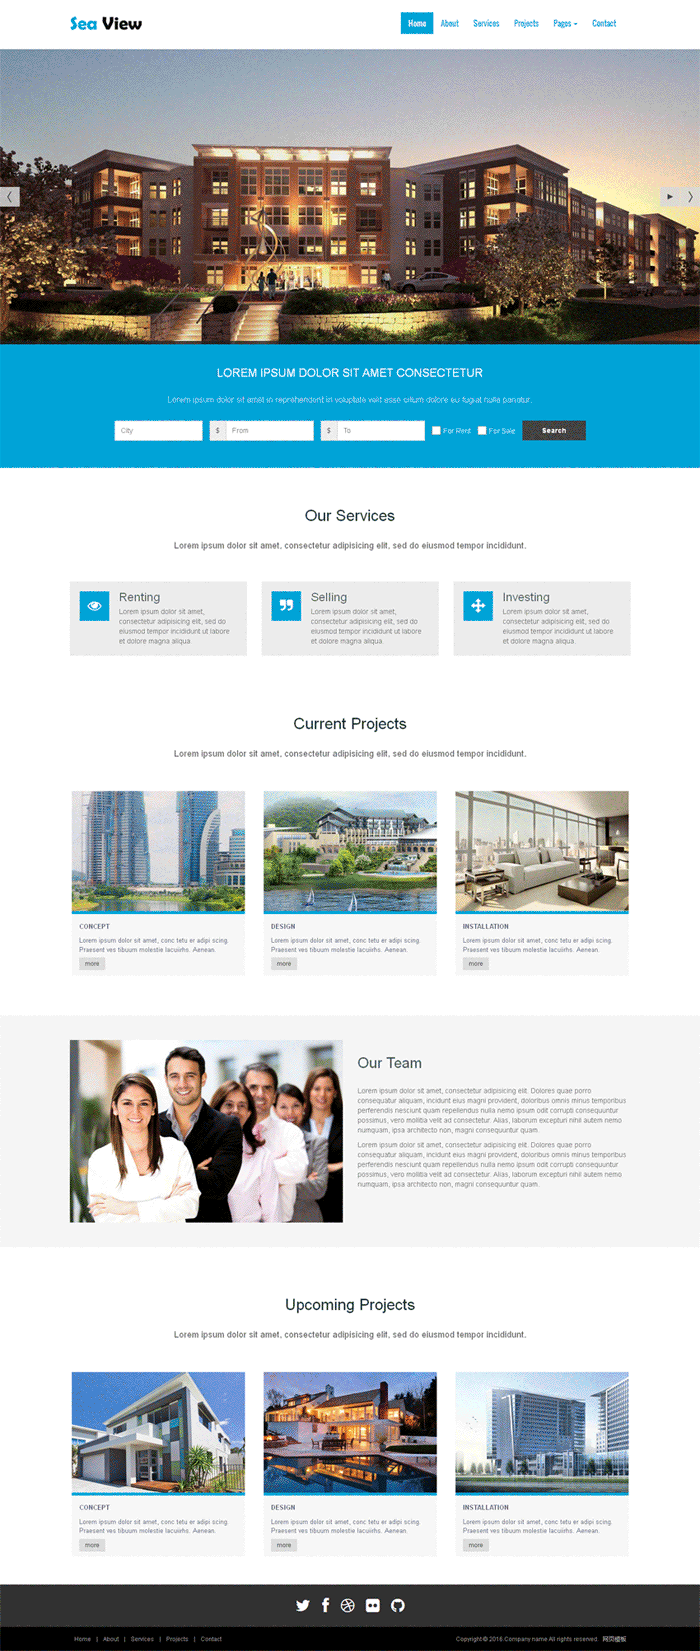 蓝色宽屏的旅游酒店预订网站模板全套下载